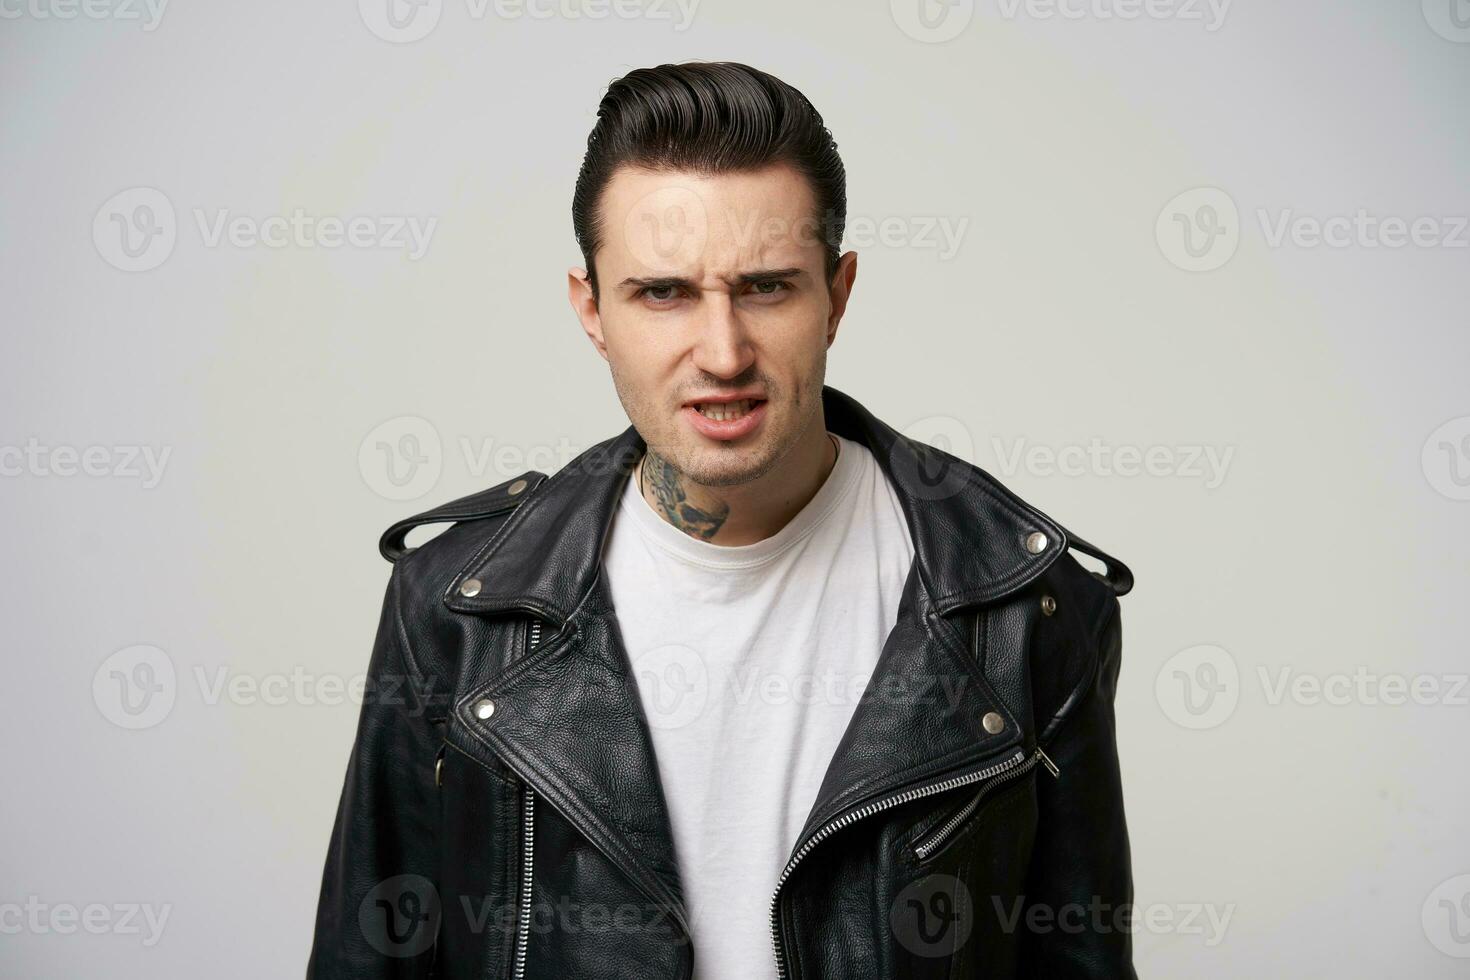 en ung motorcykel racer utseende arg, argumenterar, försvarar hans åsikt, ögonbryn rynkade, eldig ögon, mun på glänt, klädd i svart läder jacka, med en eleganta frisyr i fett, över vit bakgrund foto